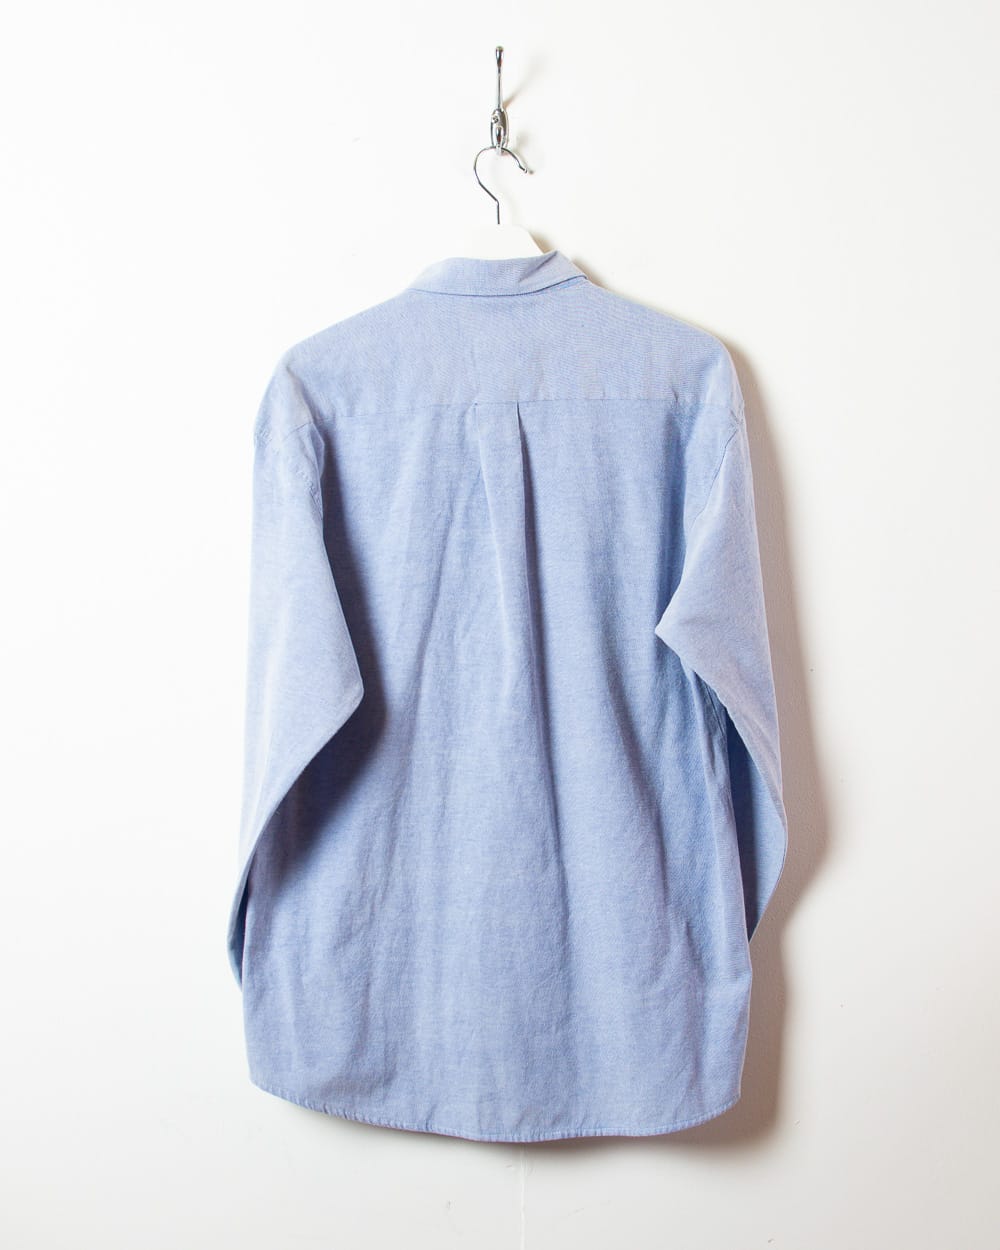 BabyBlue Lacoste Shirt - Large